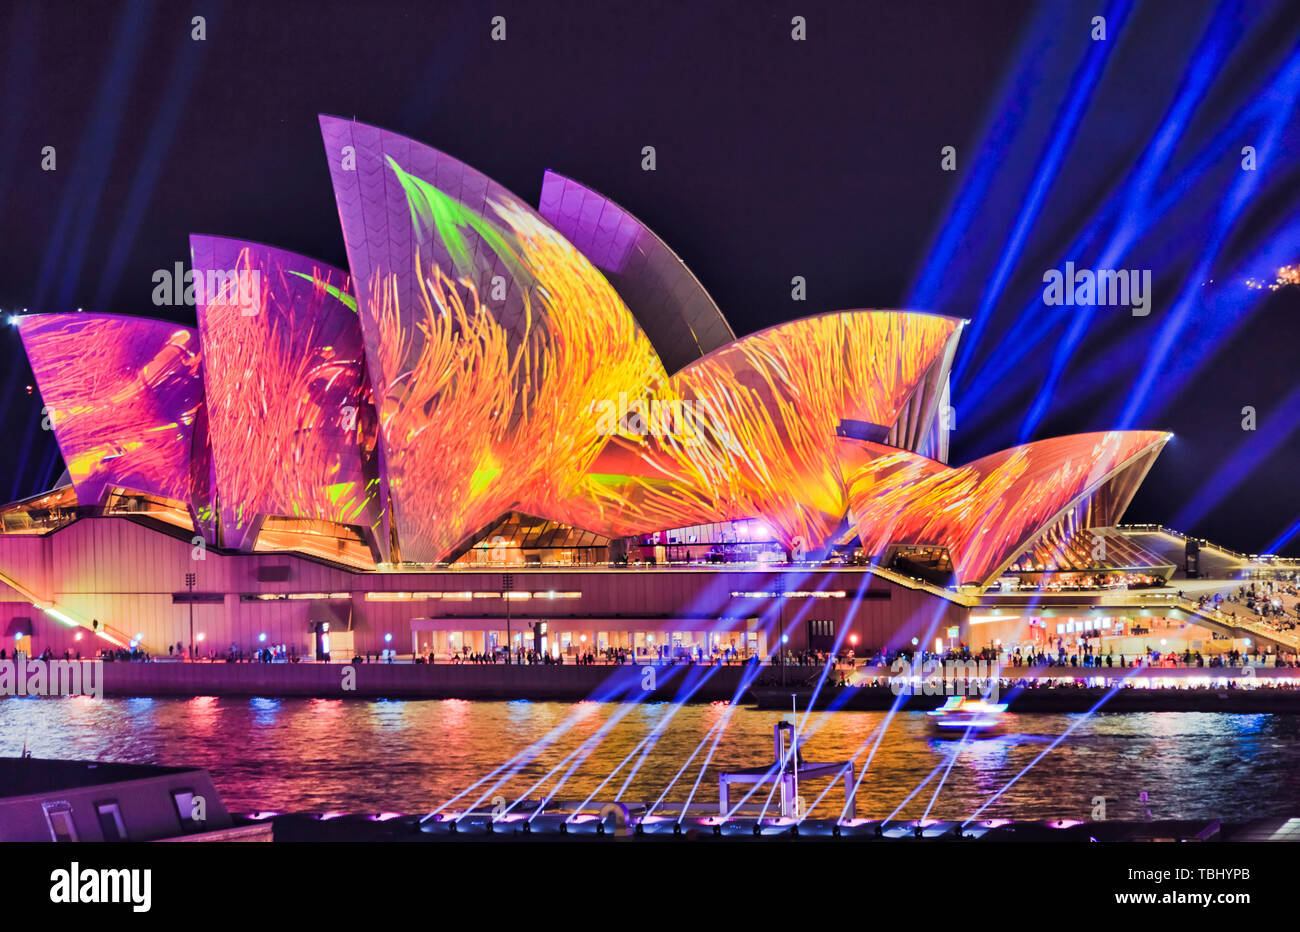 Sydney, Australien - 25. Mai 2019: bunte Bild der wachsende Sprößlinge an der Seite des Sydney Opera House bei Vivid Sydney ligh zeigen Festival projiziert. Stockfoto